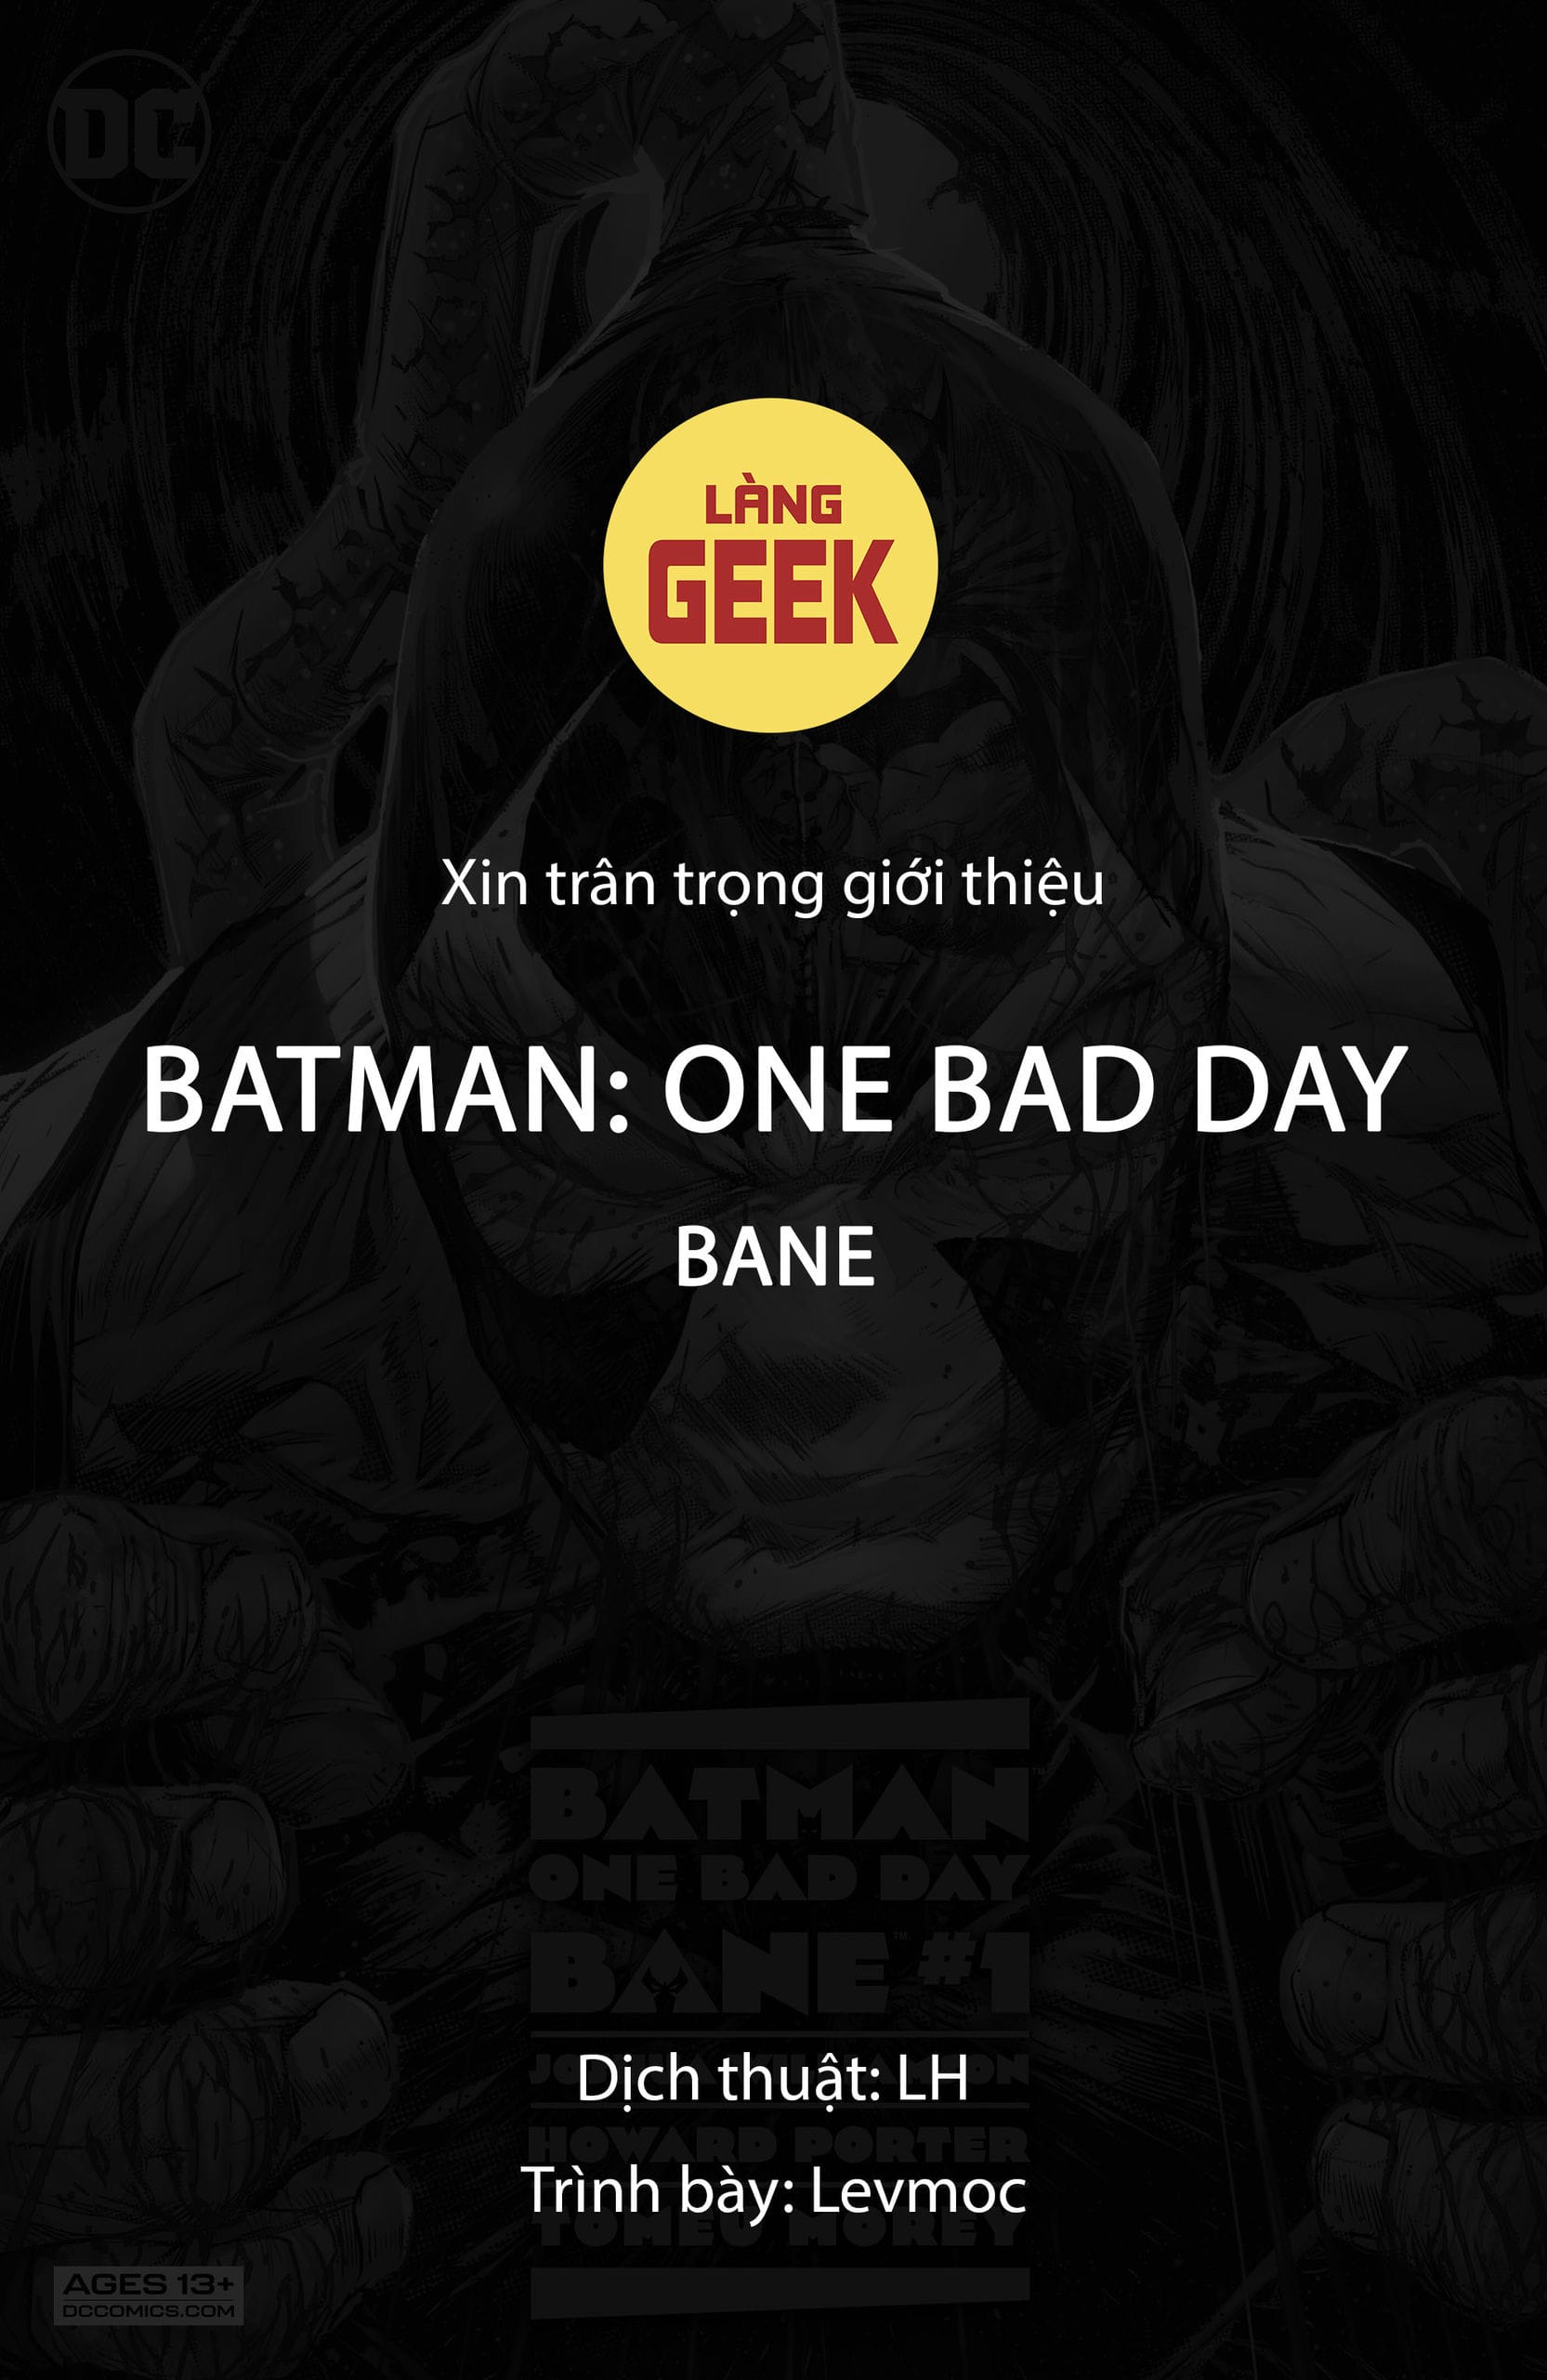 https://langgeek.net/wp-content/webpc-passthru.php?src=https://langgeek.net/wp-content/uploads/2023/01/Batman-One-Bad-Day-2022-Bane-001-001.jpg&nocache=1